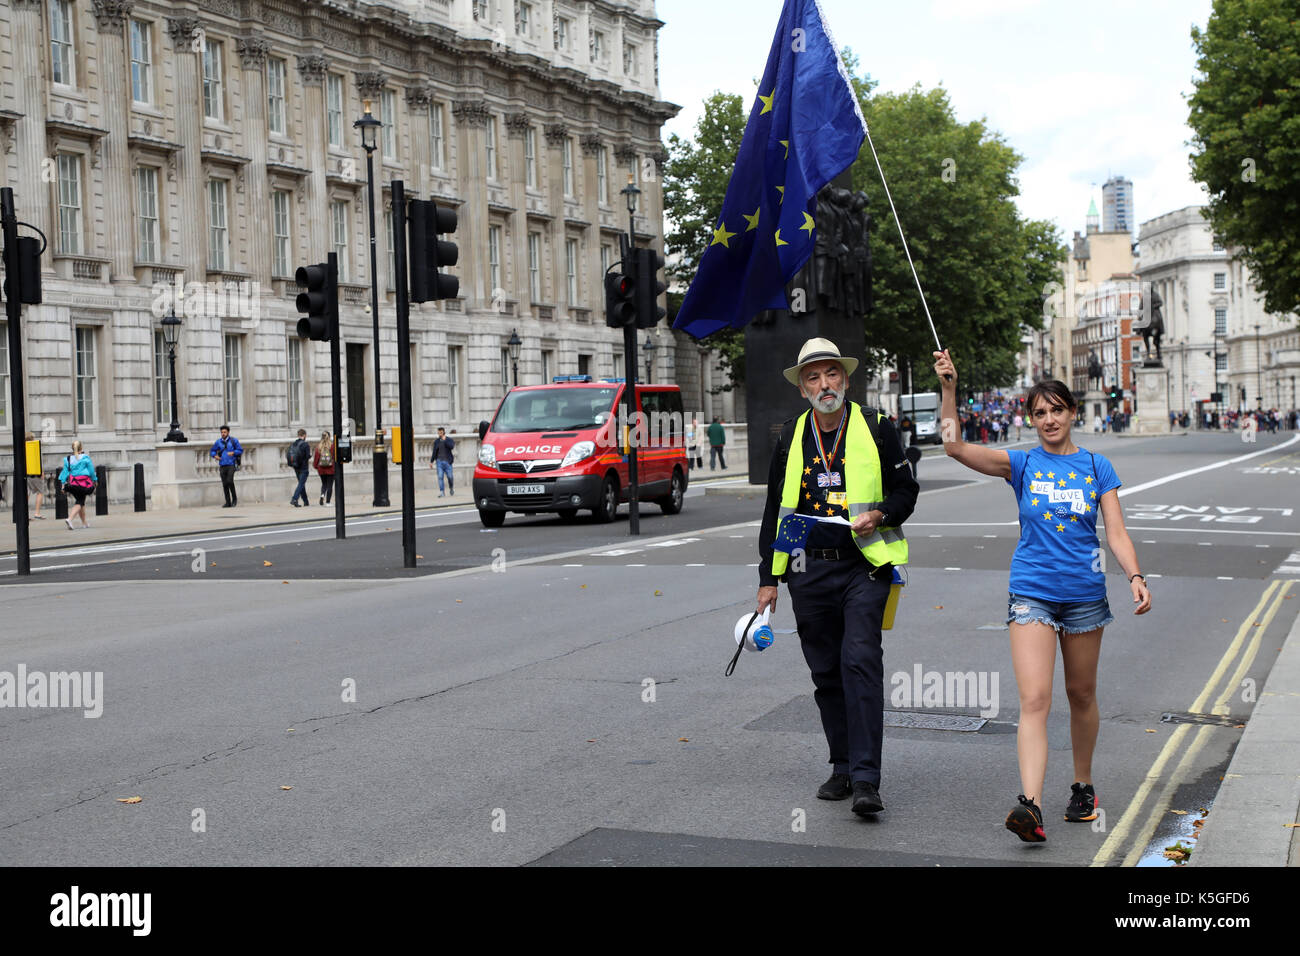 Londres, Royaume-Uni. 9 Septembre, 2017. Deux manifestants pro-UE vers le bas mars Whitehall, Londres central juste en avant de la Marche pour l'Europe, le 9 septembre 2017 Crédit : Dominic Dudley/Alamy Live News Banque D'Images